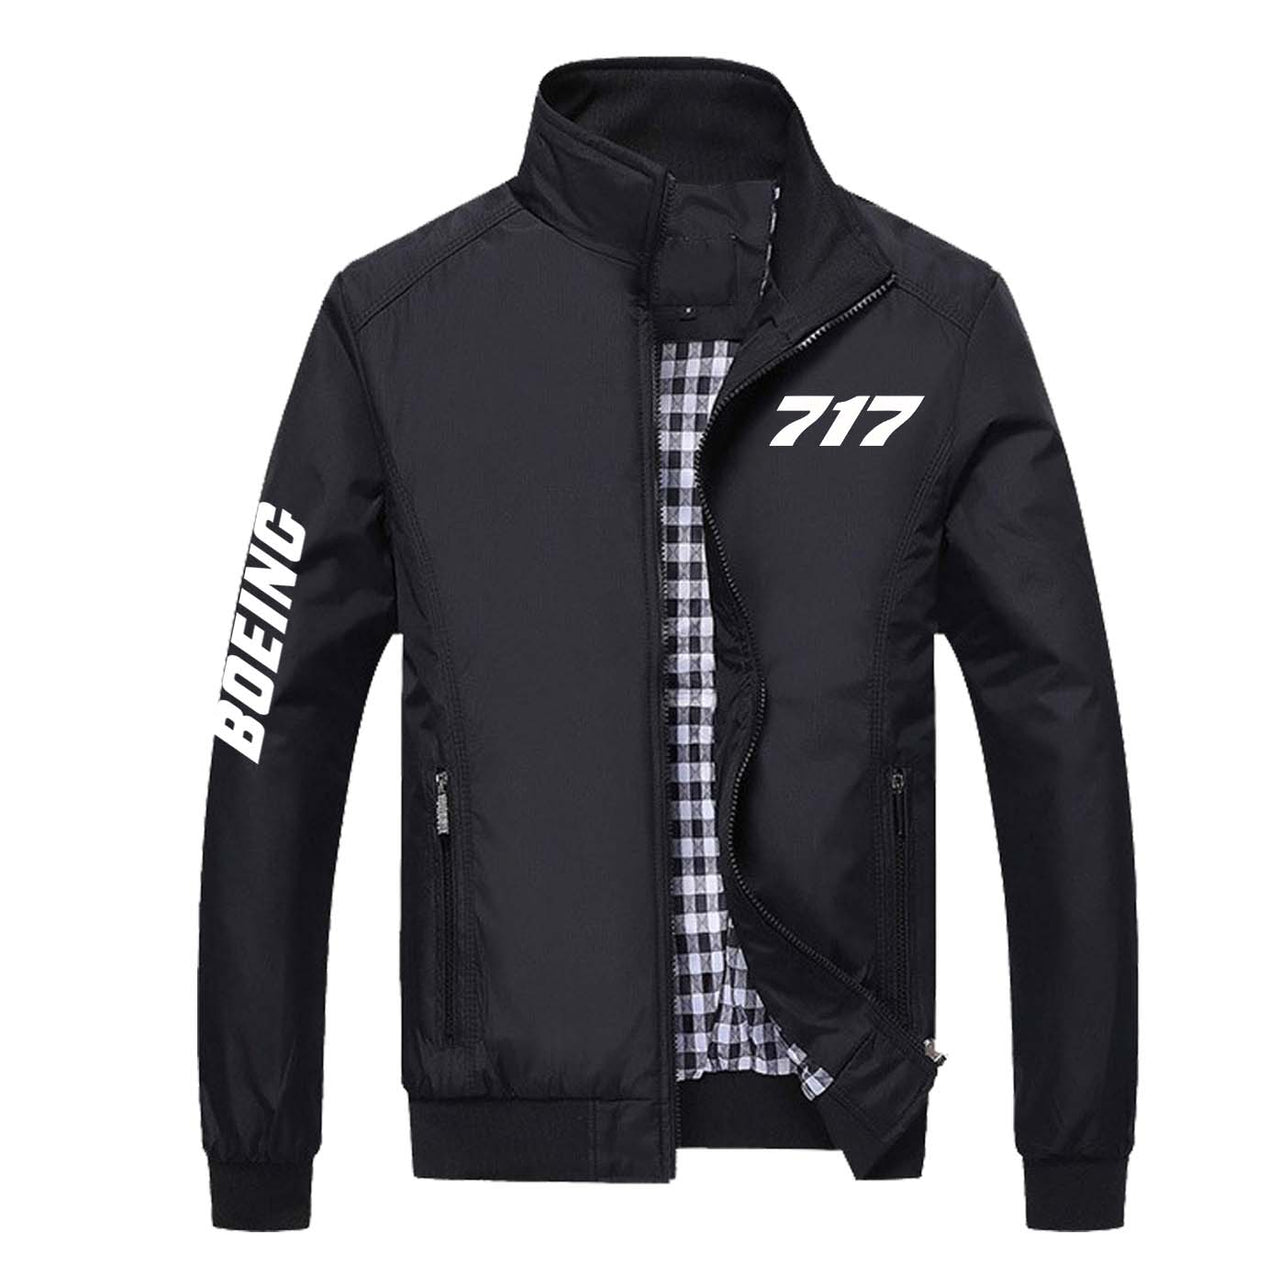 717 Flat Text Designed Stylish Jackets